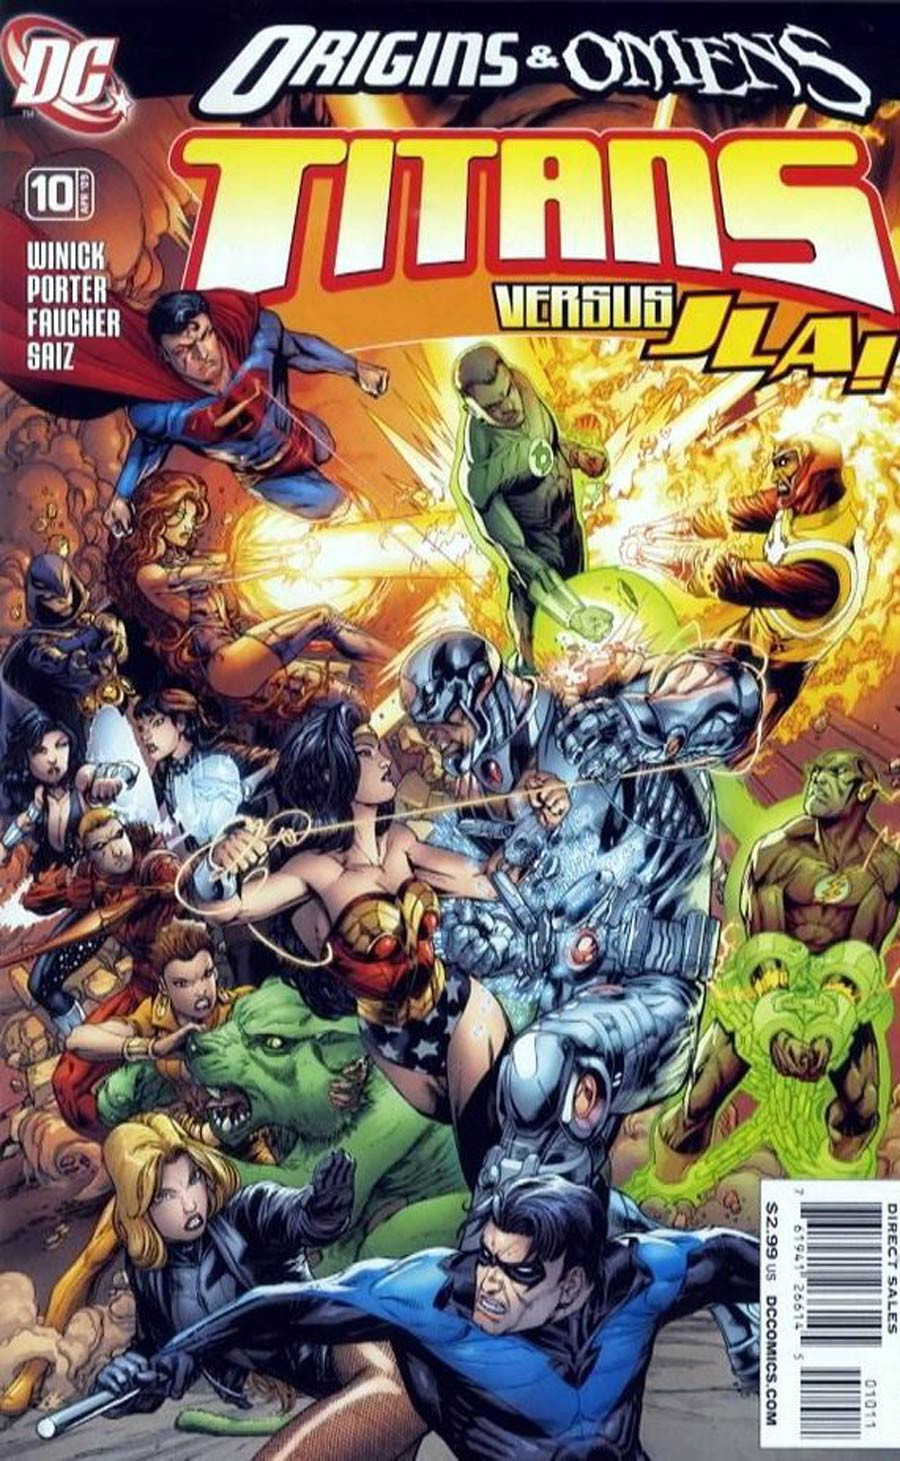 Titans Vol 2 #10 (Origins & Omens Tie-In)